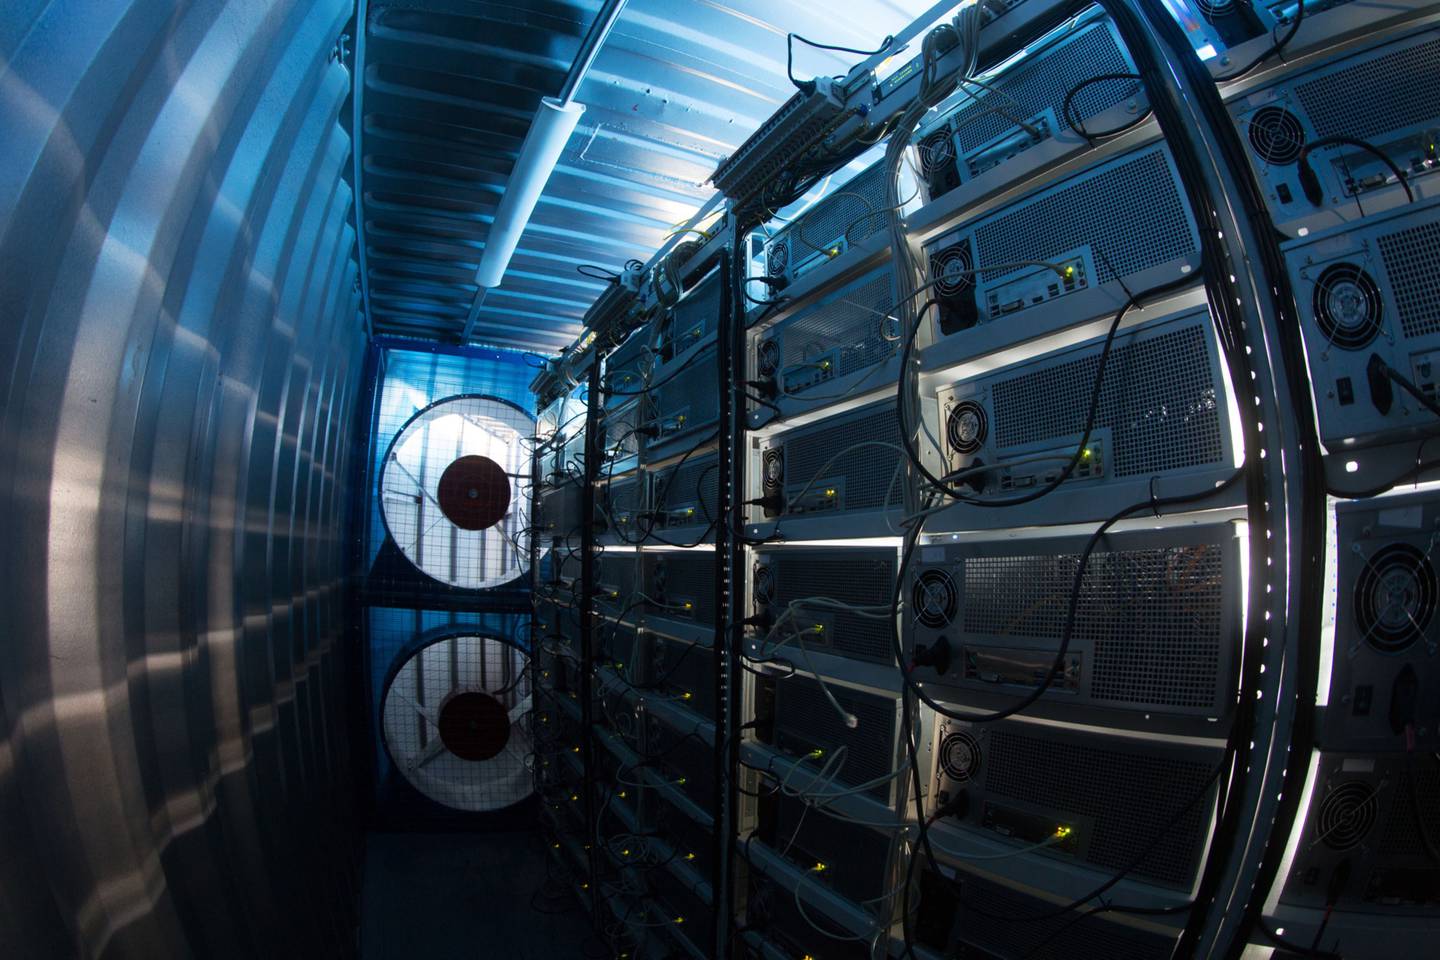 Los ventiladores de refrigeración operan junto a las plataformas mineras dentro de un contenedor de envío convertido en una granja minera de criptomonedas móvil.